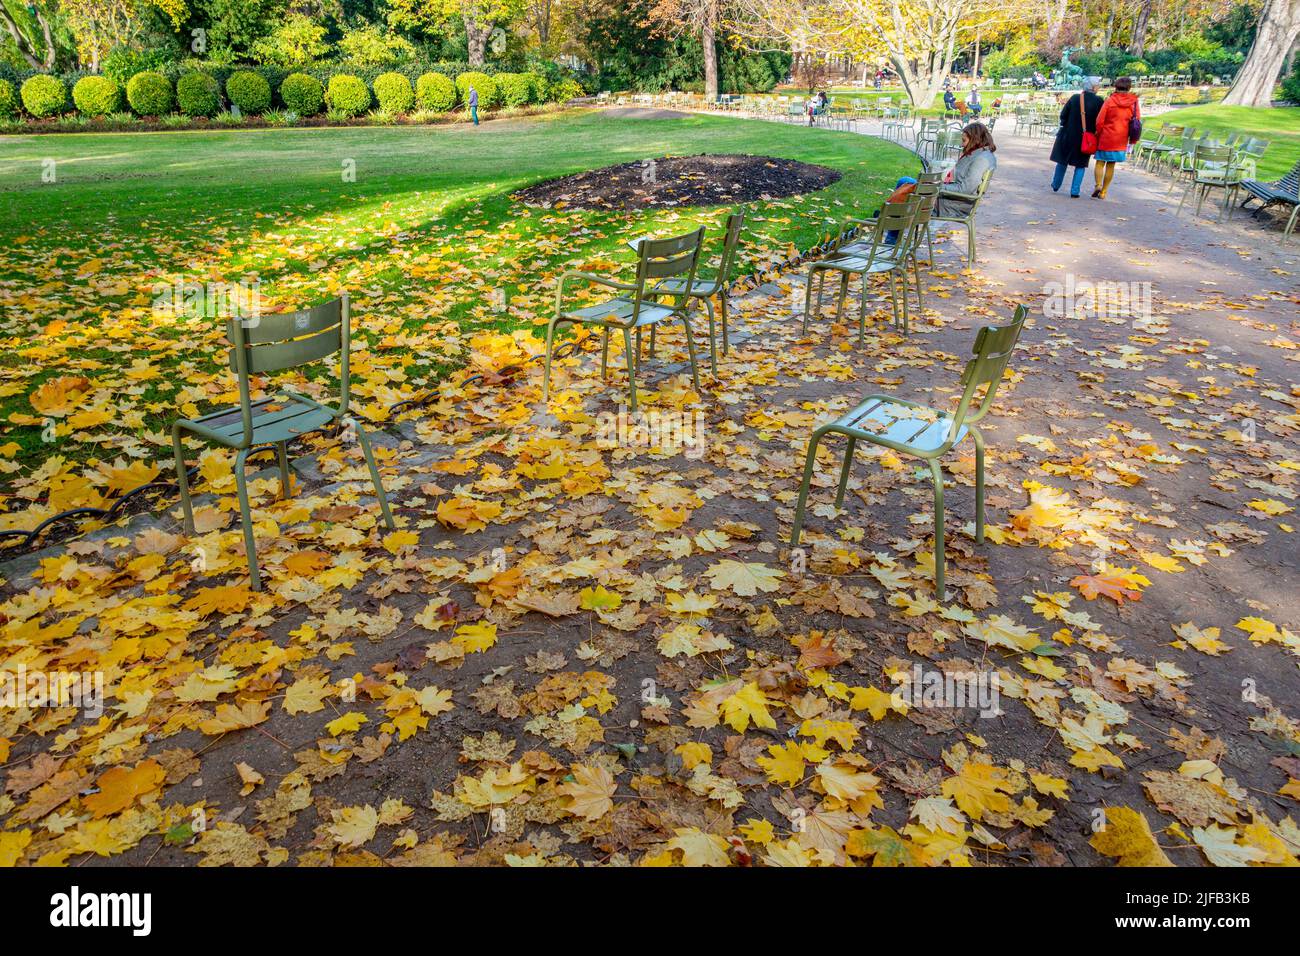 Francia, París, Luxemburgo jardín en otoño Foto de stock